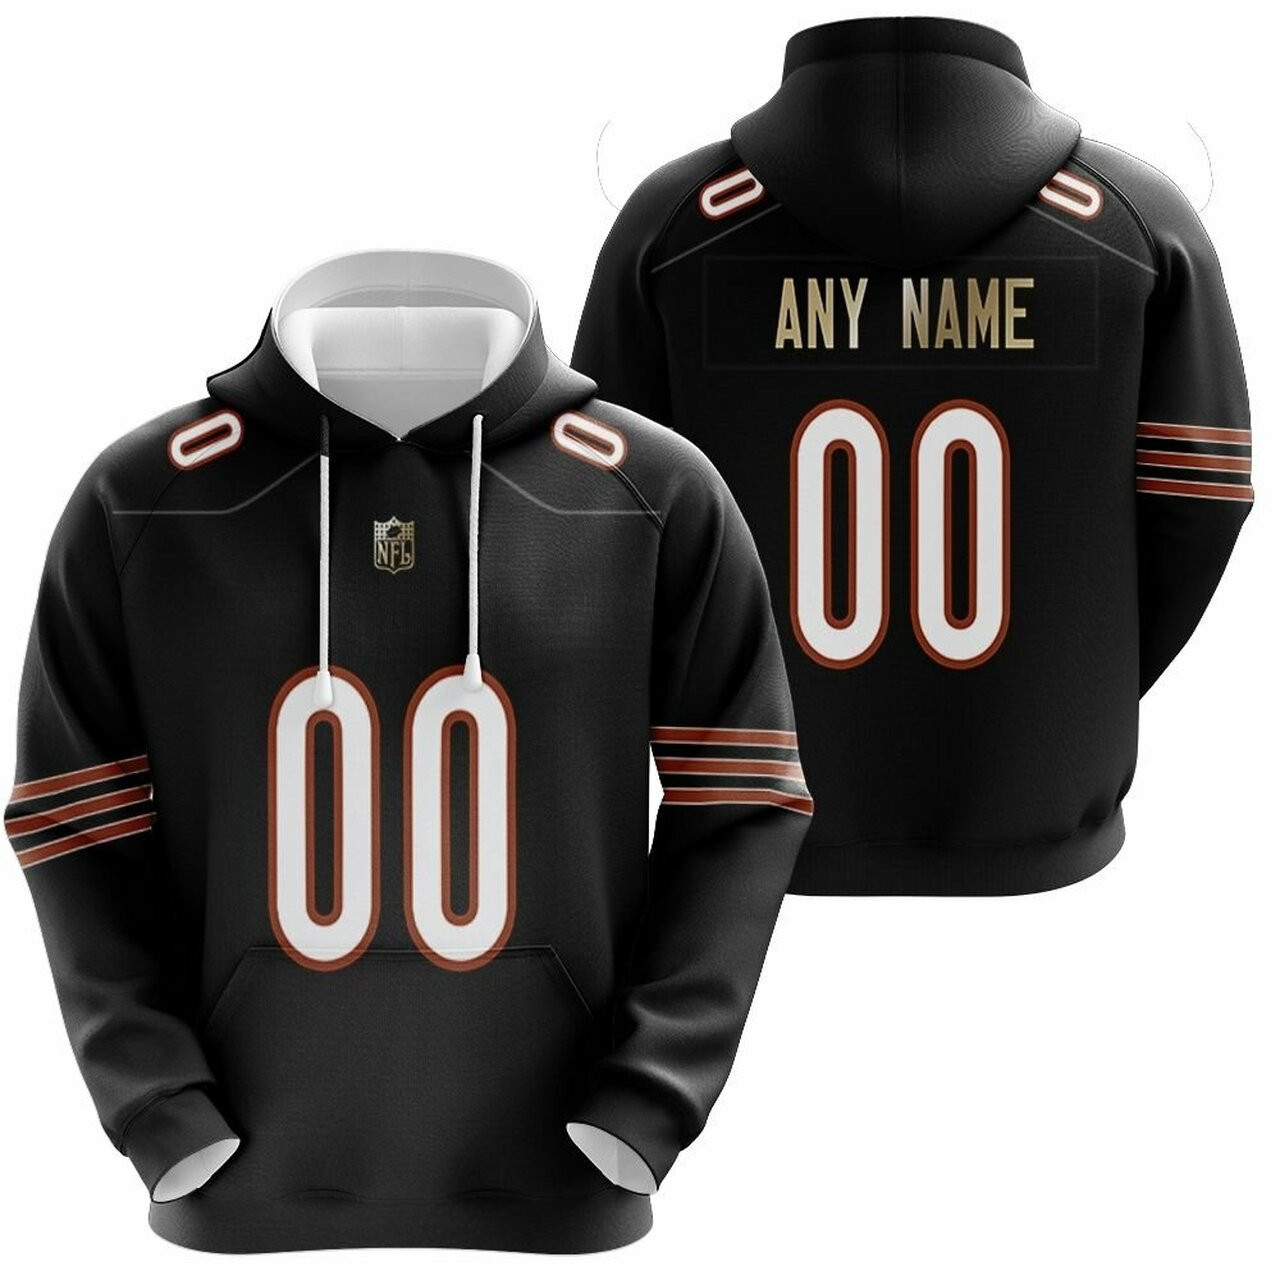 Chicago Bears Nfl American Football Team Custom Game Navy 3d Designed Allover Custom Gift For Bears Fans Hoodie